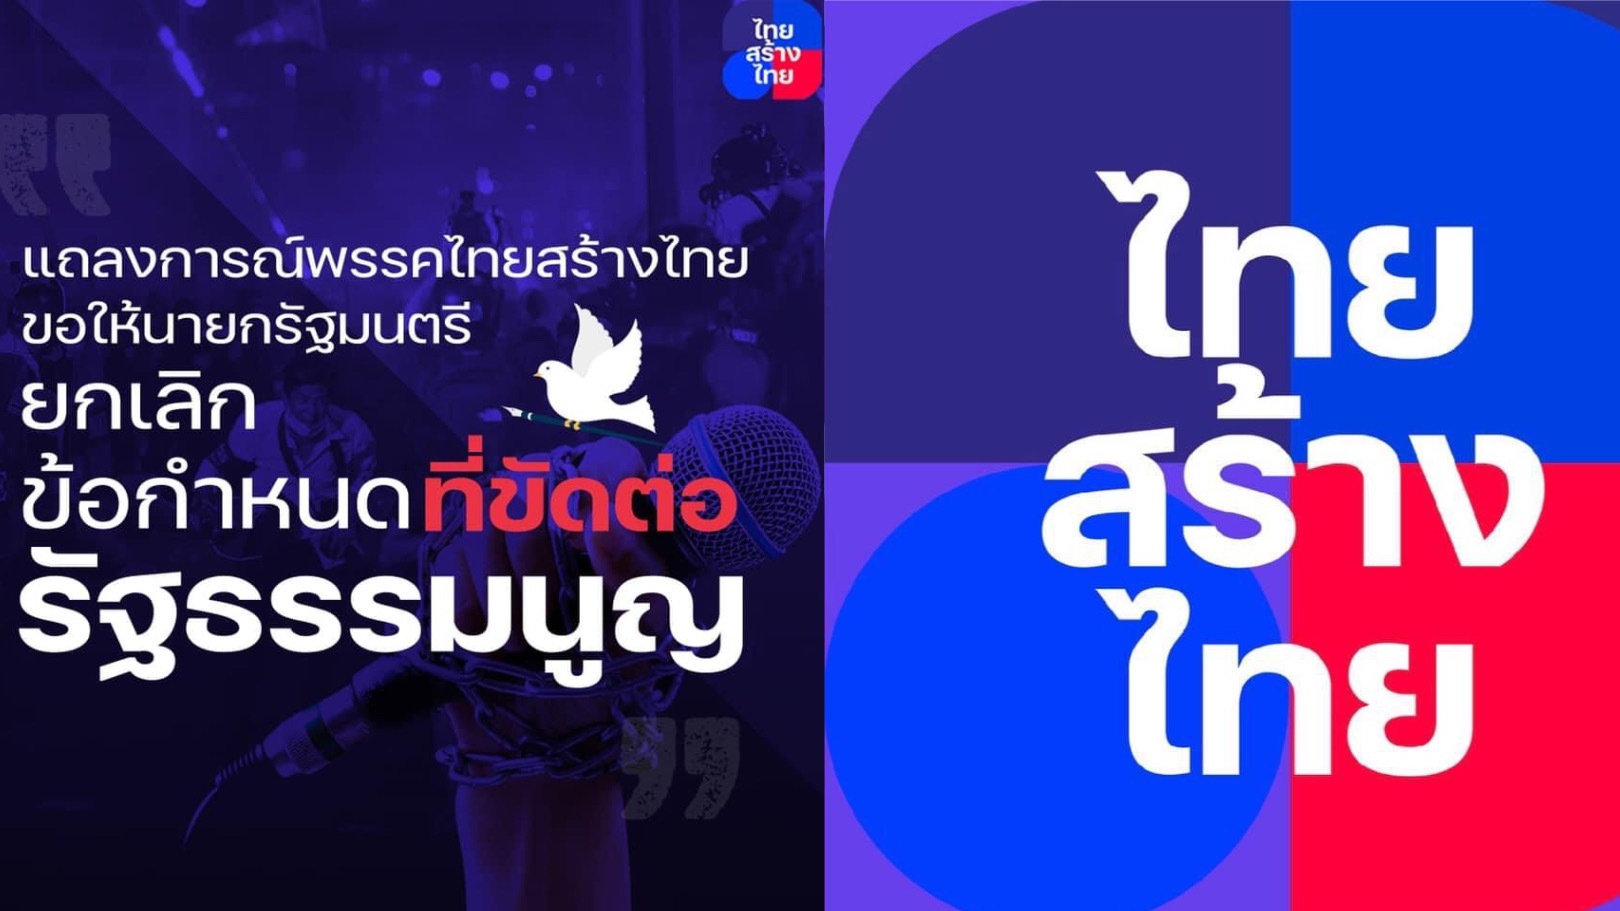 ไทยสร้างไทย จี้นายกฯ ยกเลิกกฎหมายคุมการนำเสนอข่าว ชี้ขัดต่อรัฐธรรมนูญ